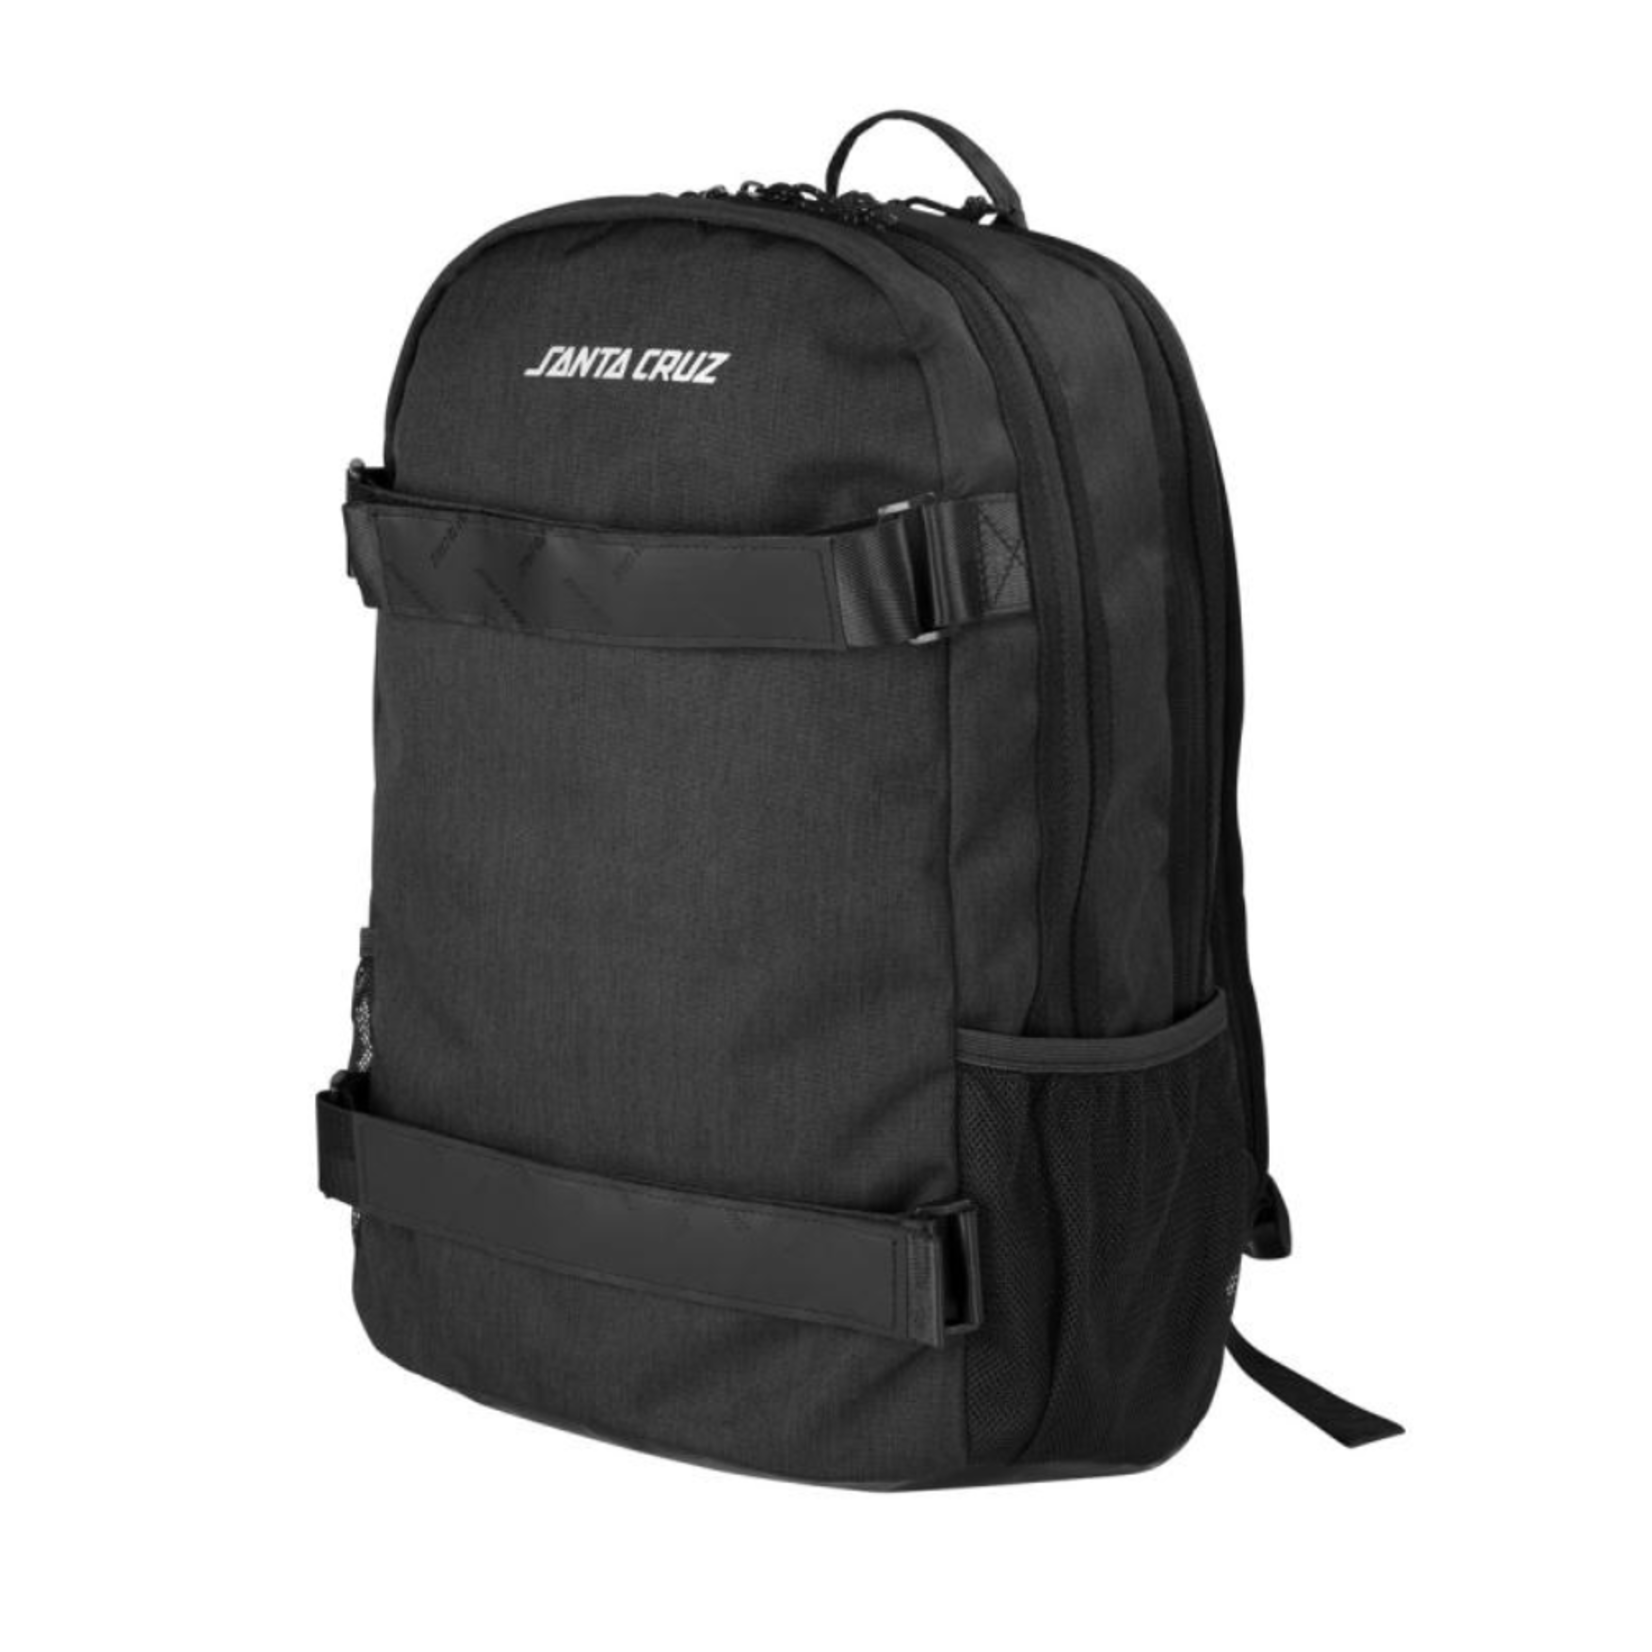 SANTA CRUZ Santa Cruz Sabre Backpack - Black